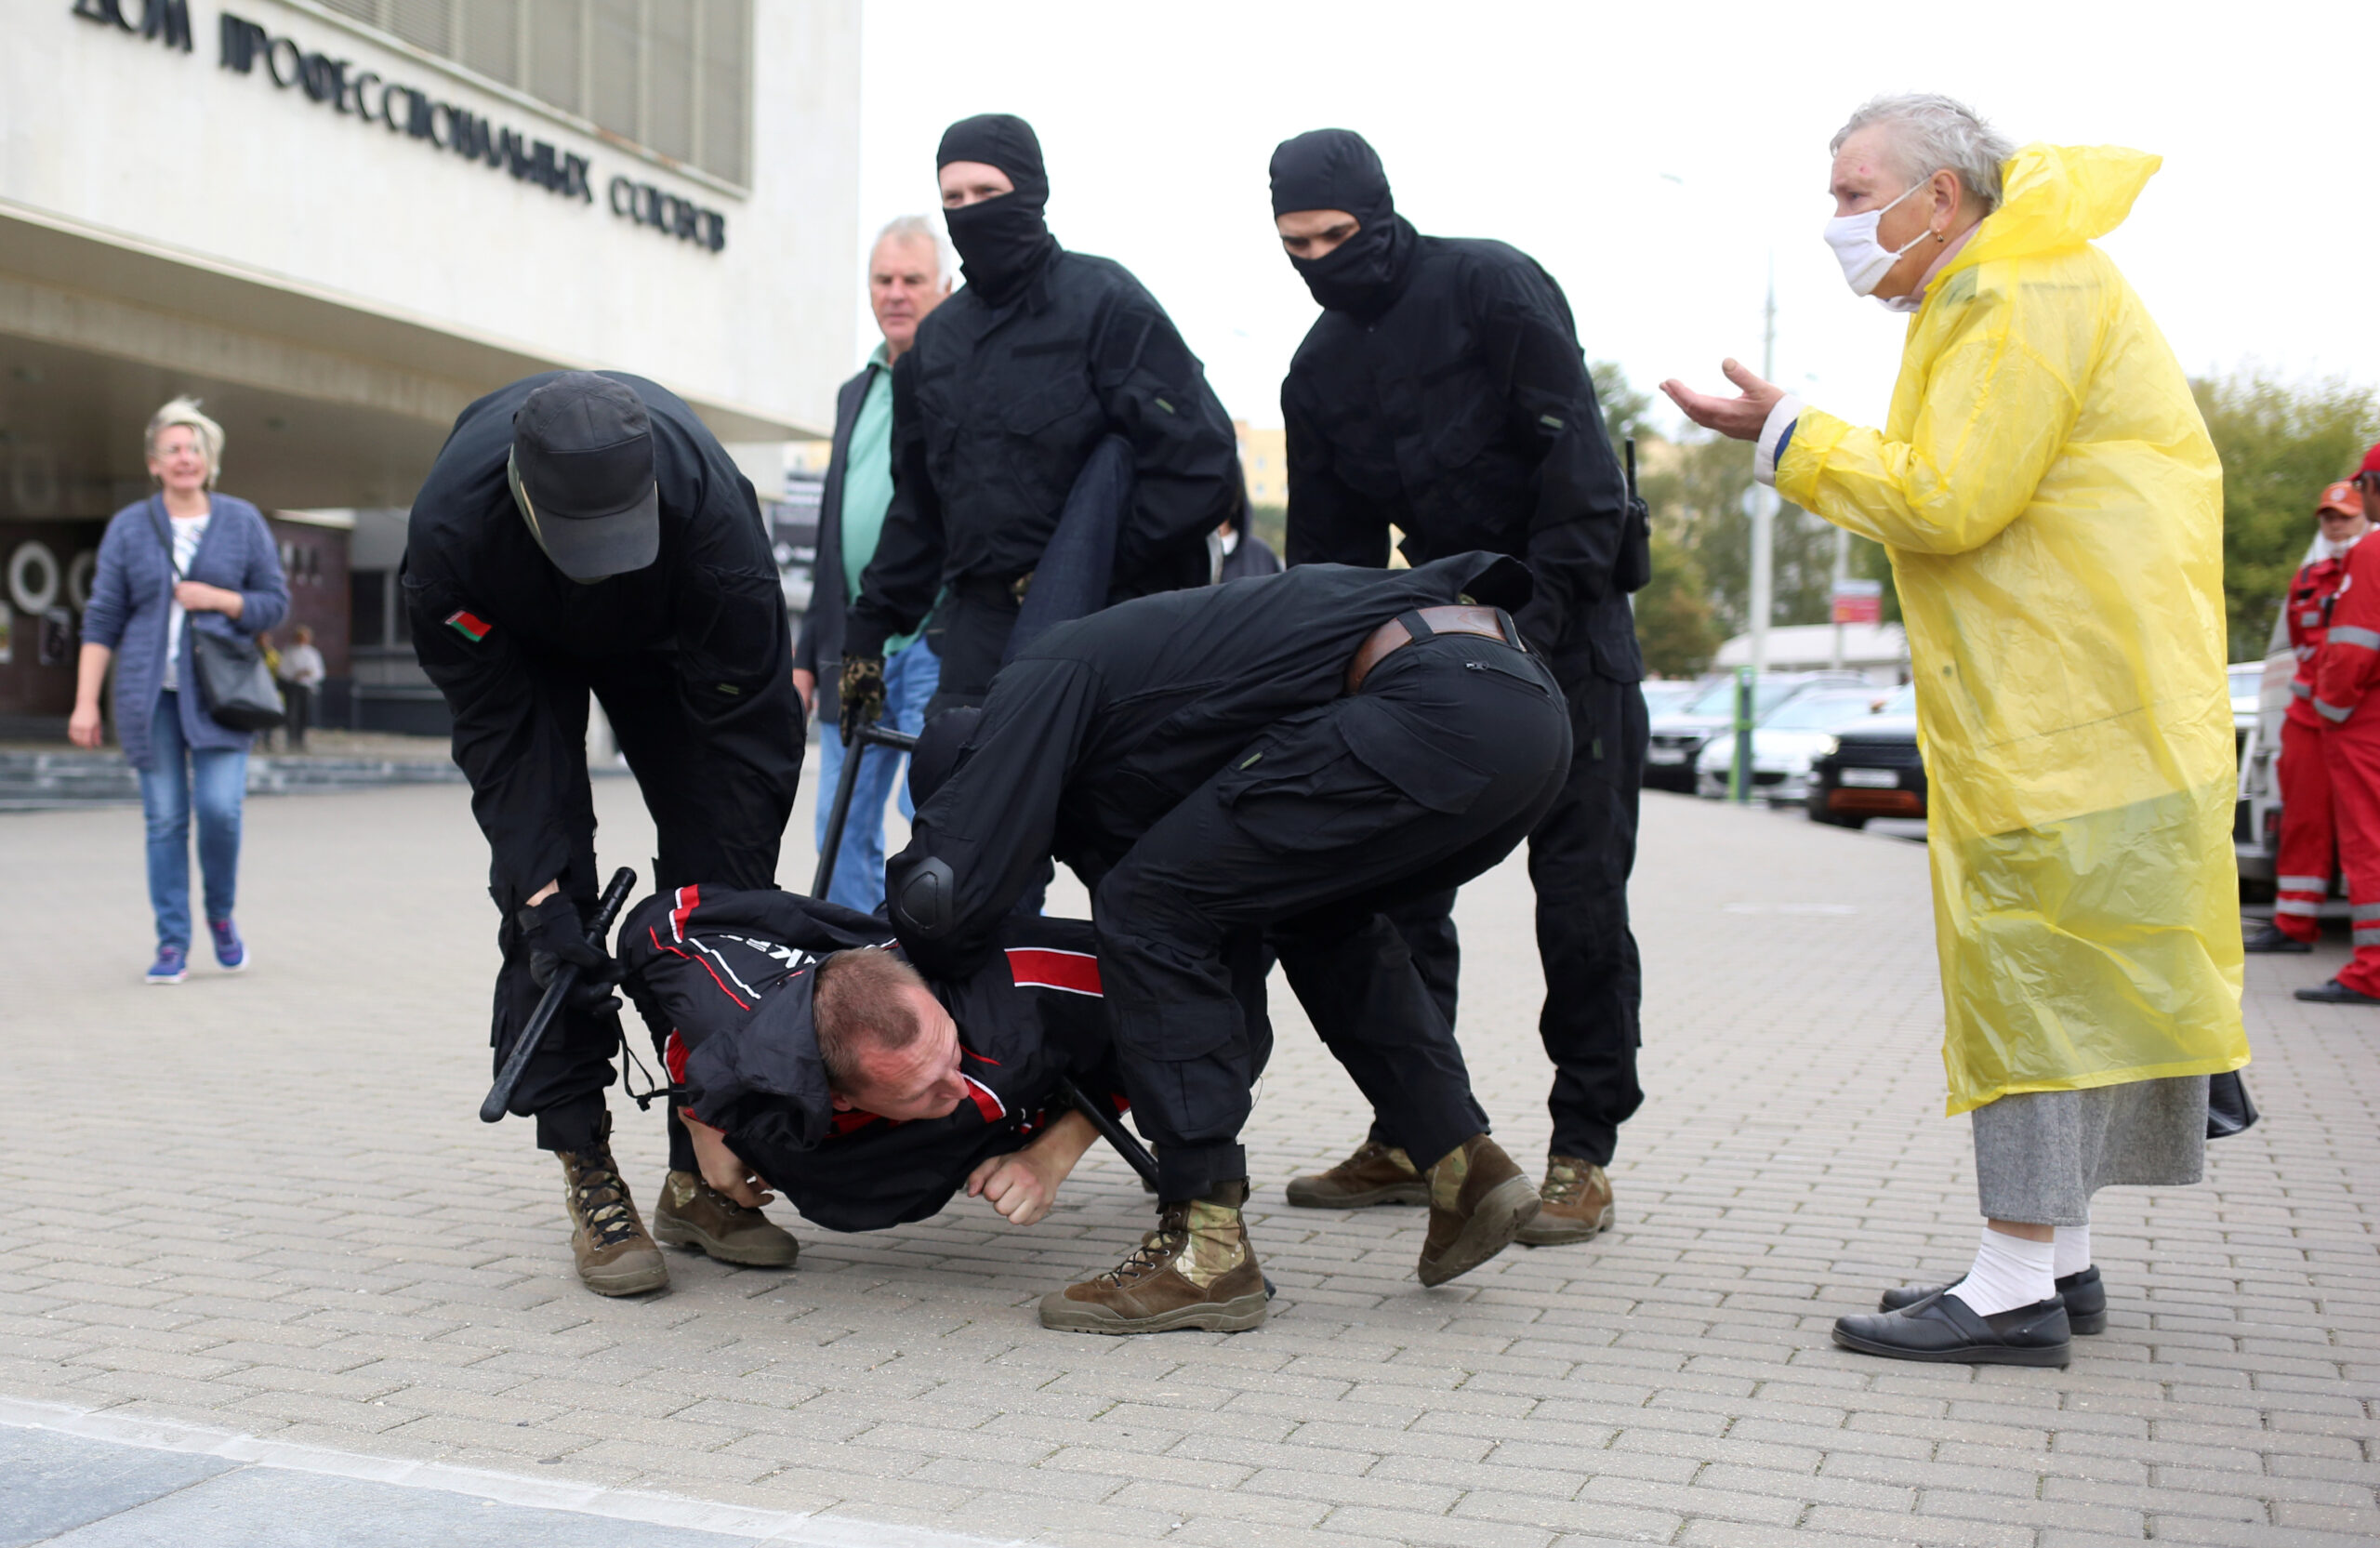 Personas no identificadas enmascaradas, supuestamente miembros de las fuerzas del orden de Belarús, detienen a un hombre en Minsk, Belarús, el 27 de septiembre de 2020. REUTERS/Stringer